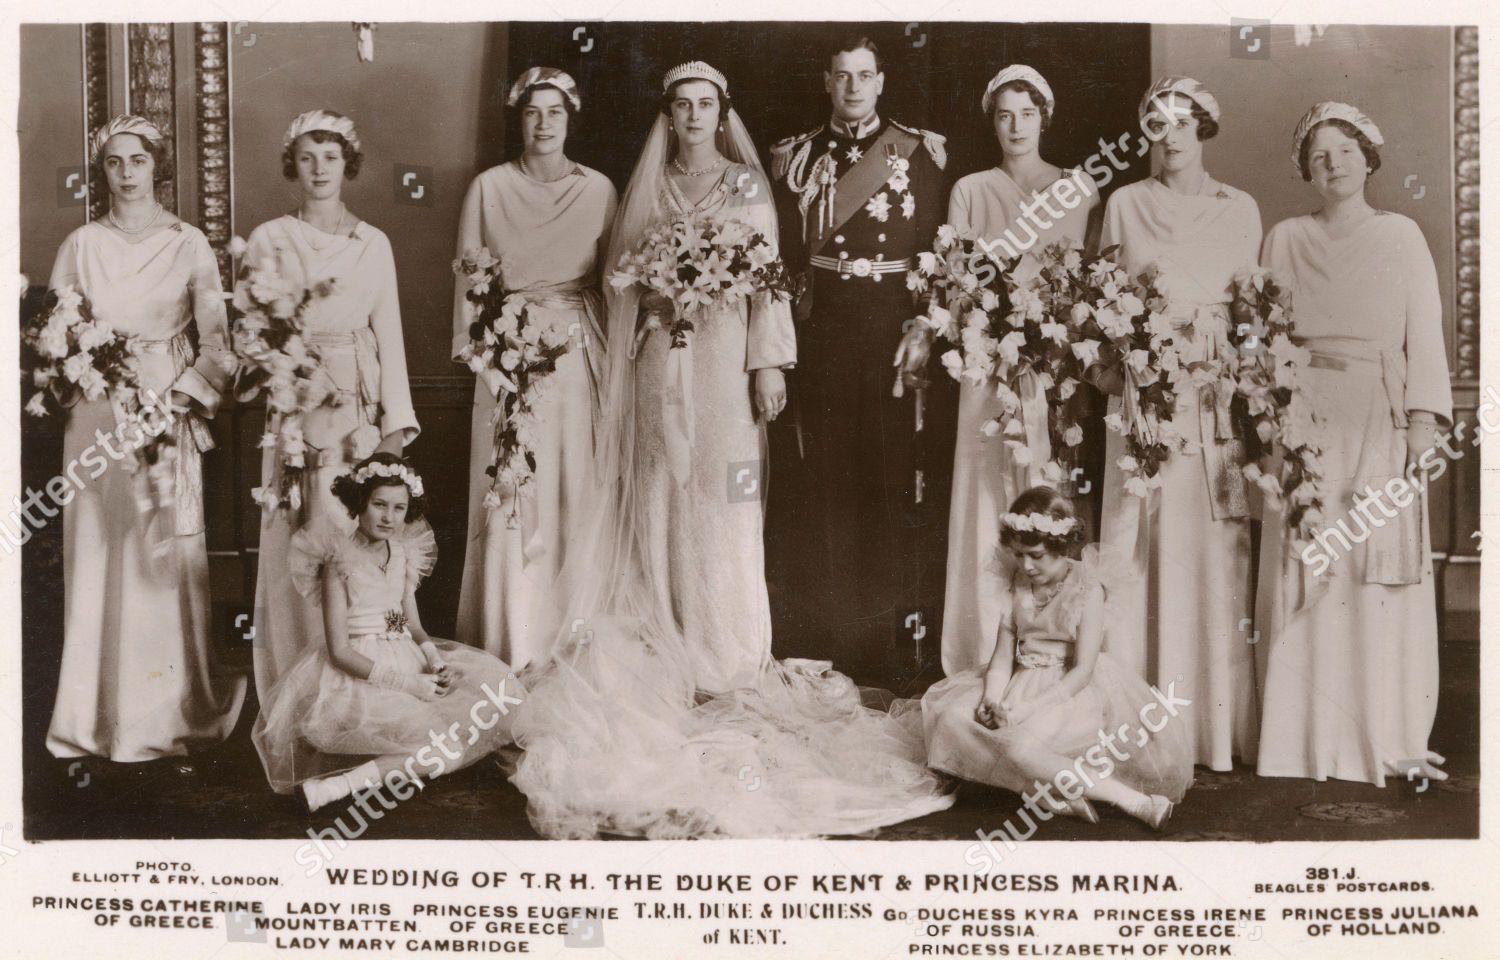 wedding-group-duke-of-kent-princess-marina-of-greece-1934-shutterstock-editorial-9828066a